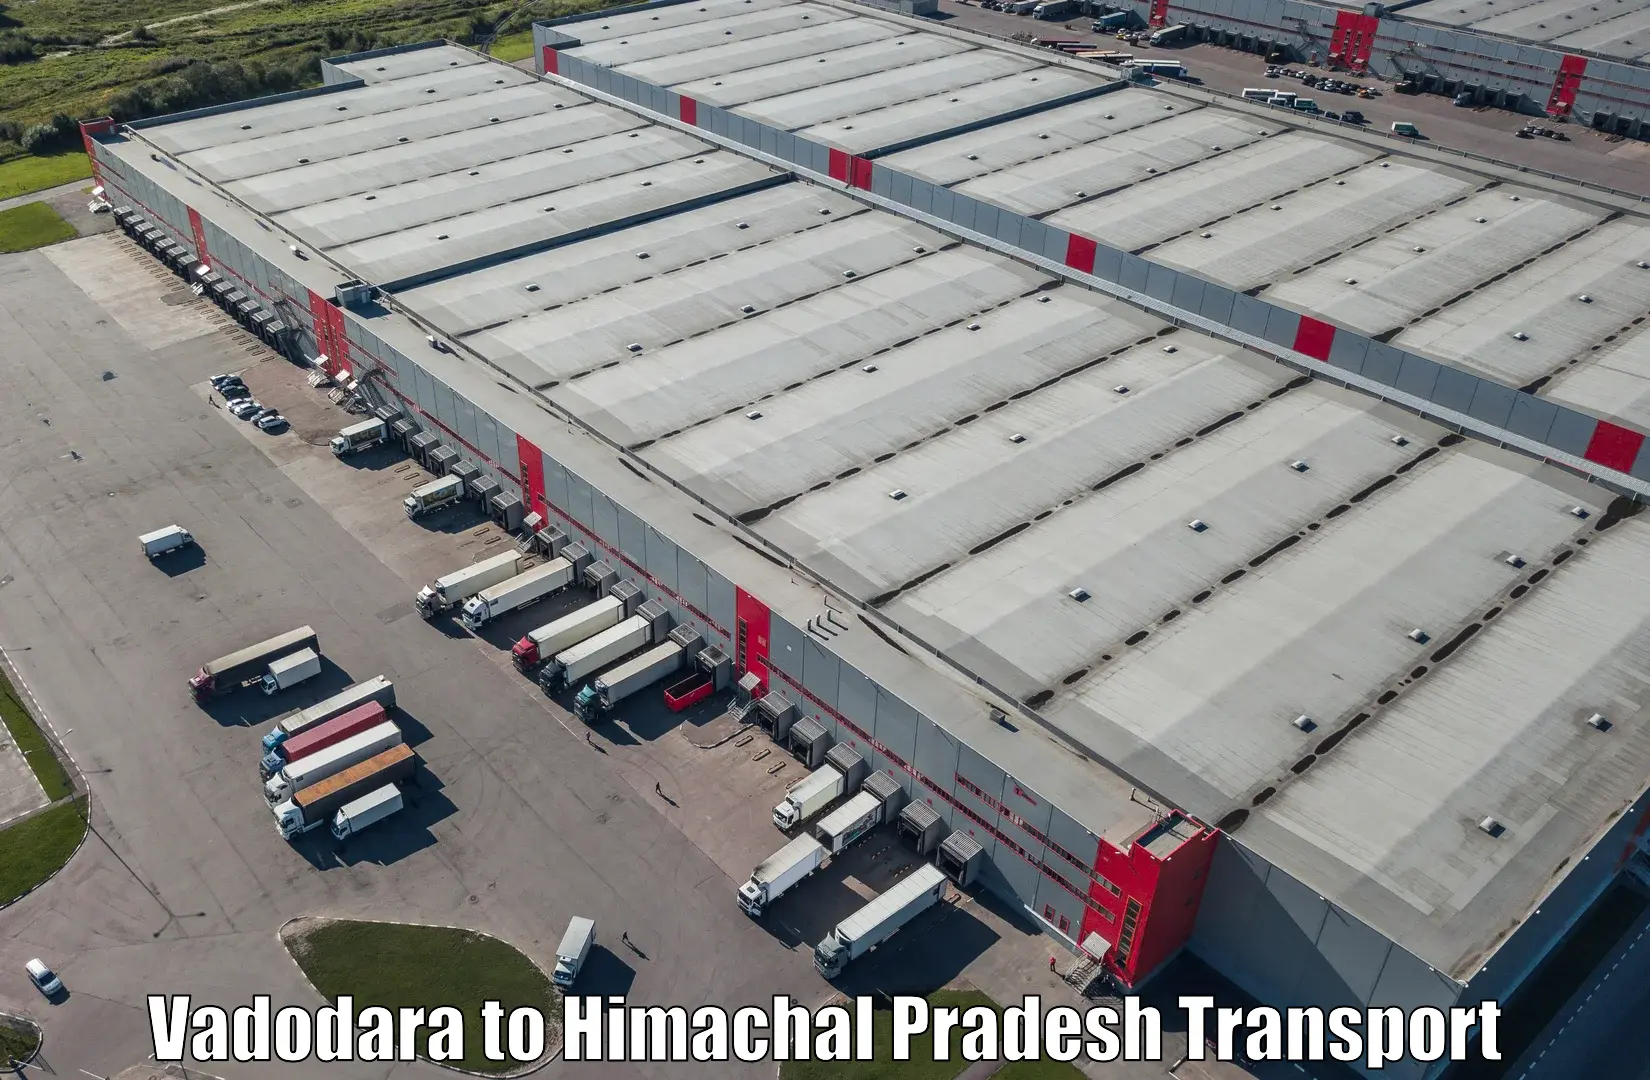 Cargo train transport services in Vadodara to Dheera